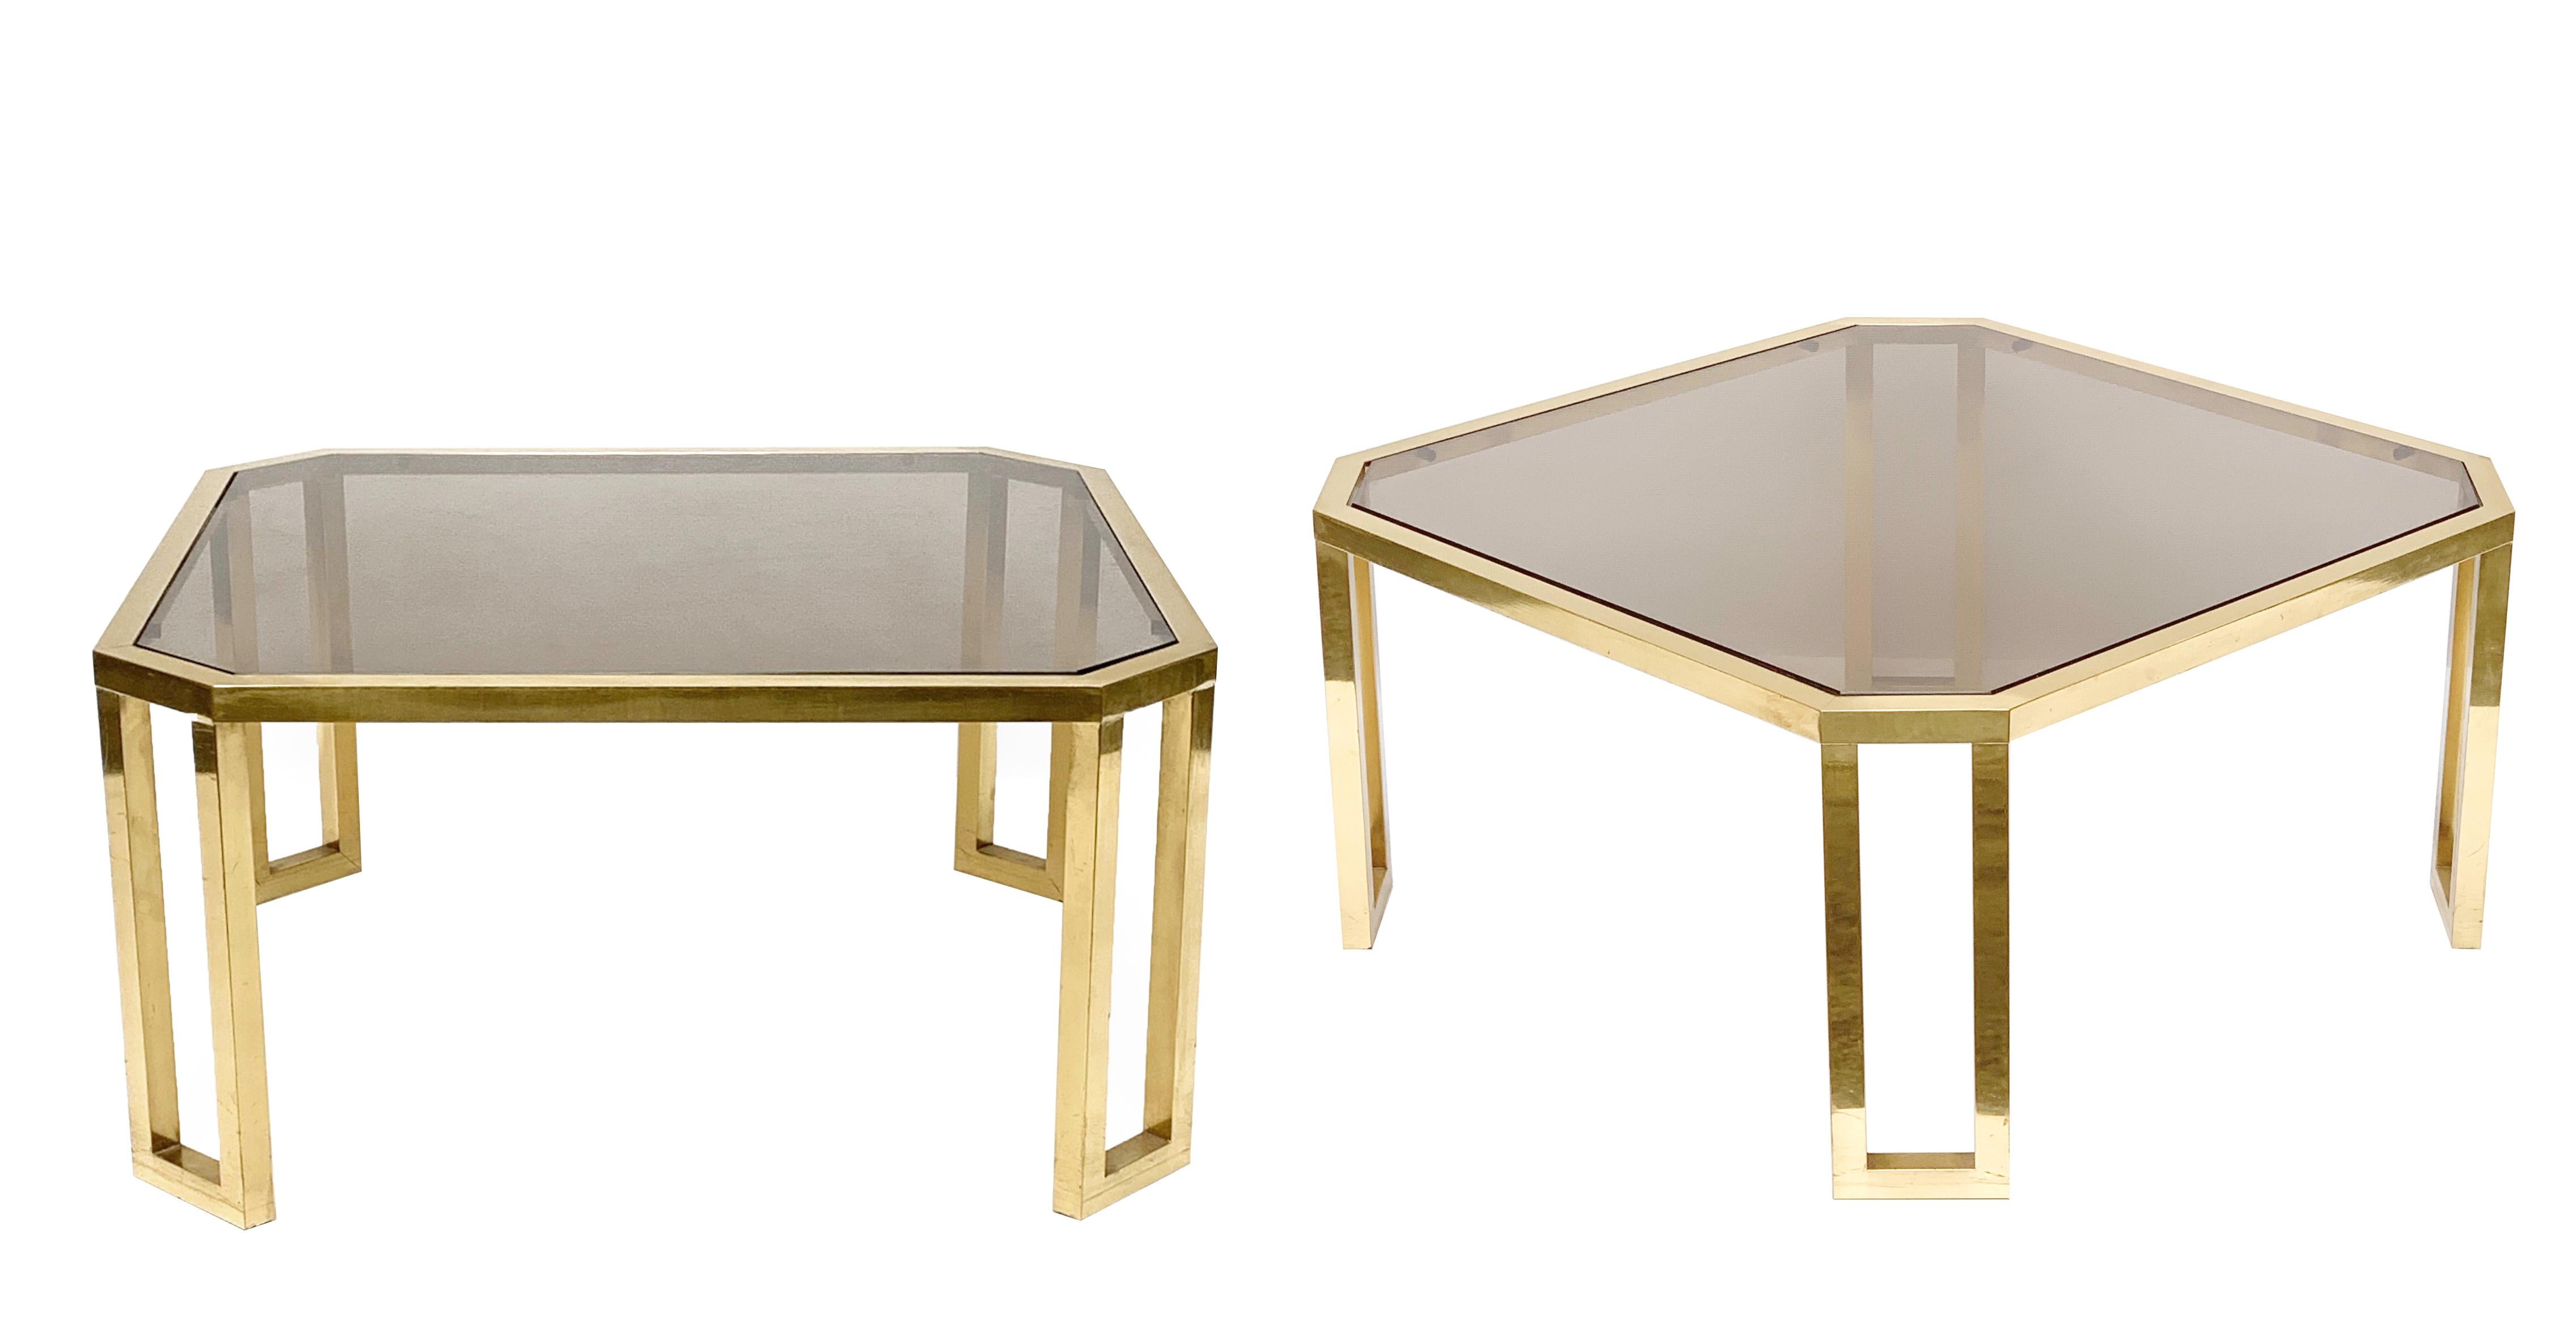 Table basse octogonale en laiton et verre fumé de Maison Jansen.
Peut être utilisée comme table d'appoint ou comme table basse. France, années 1970

Deux pièces disponibles, le prix se réfère à la table unique.